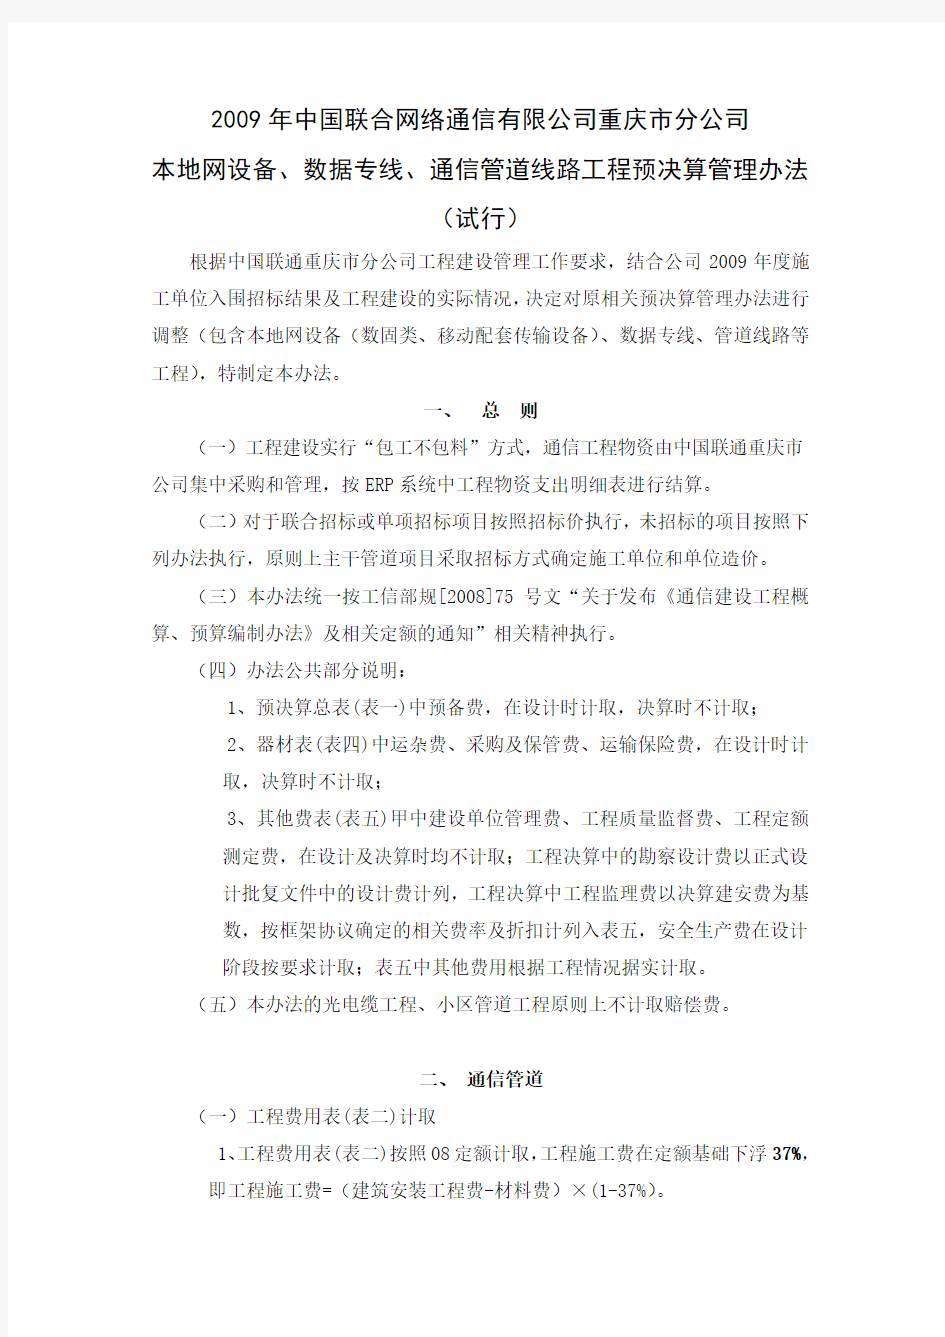 2009年中国联合网络通信有限公司重庆市分公司决算办法